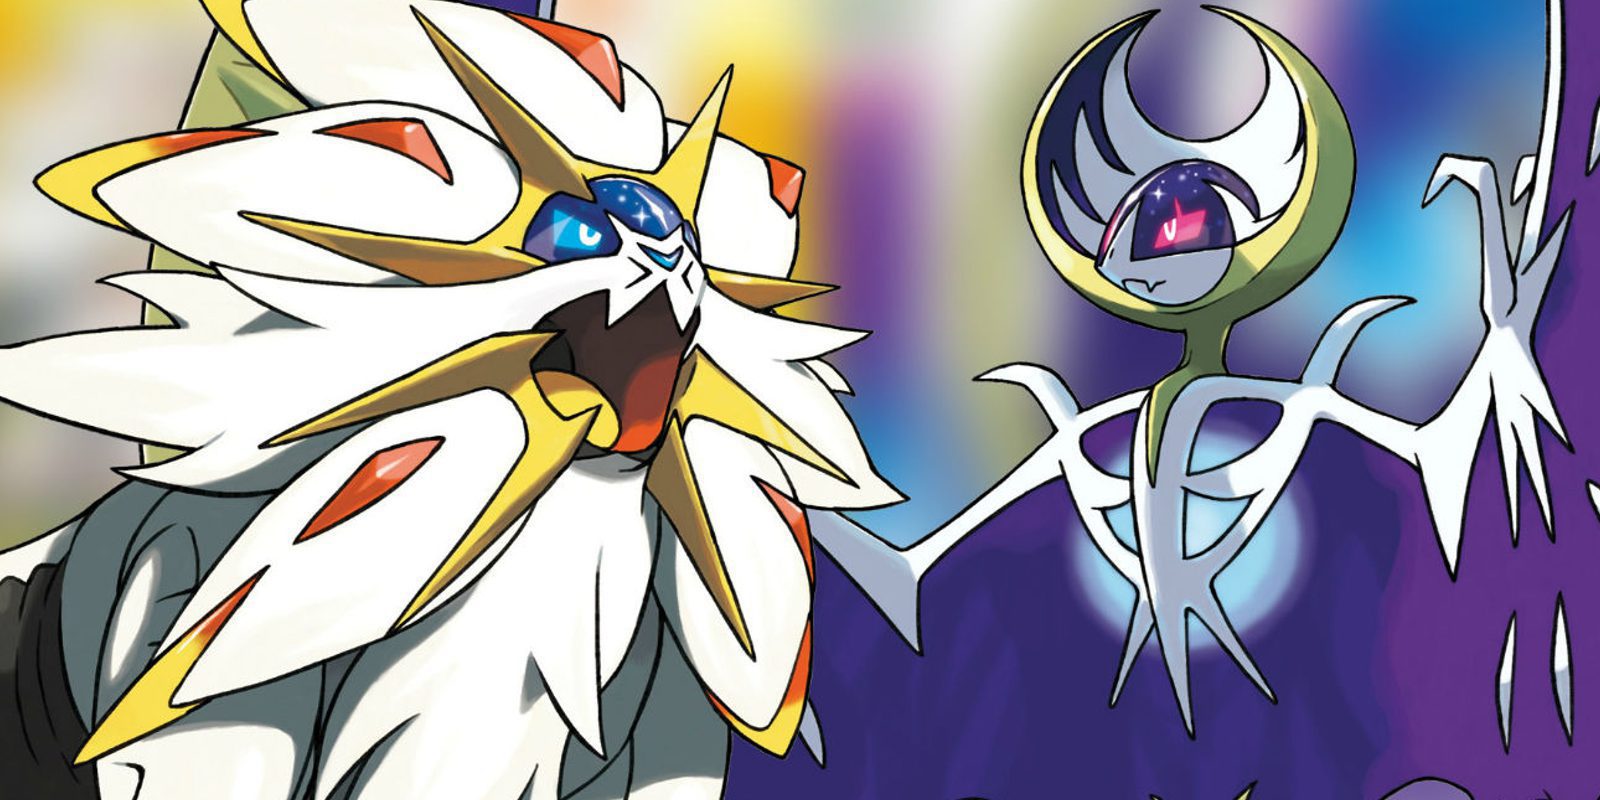 ZhugeEx: "Filtraciones como la de 'Pokémon Stars' apenas afectan a las ventas"